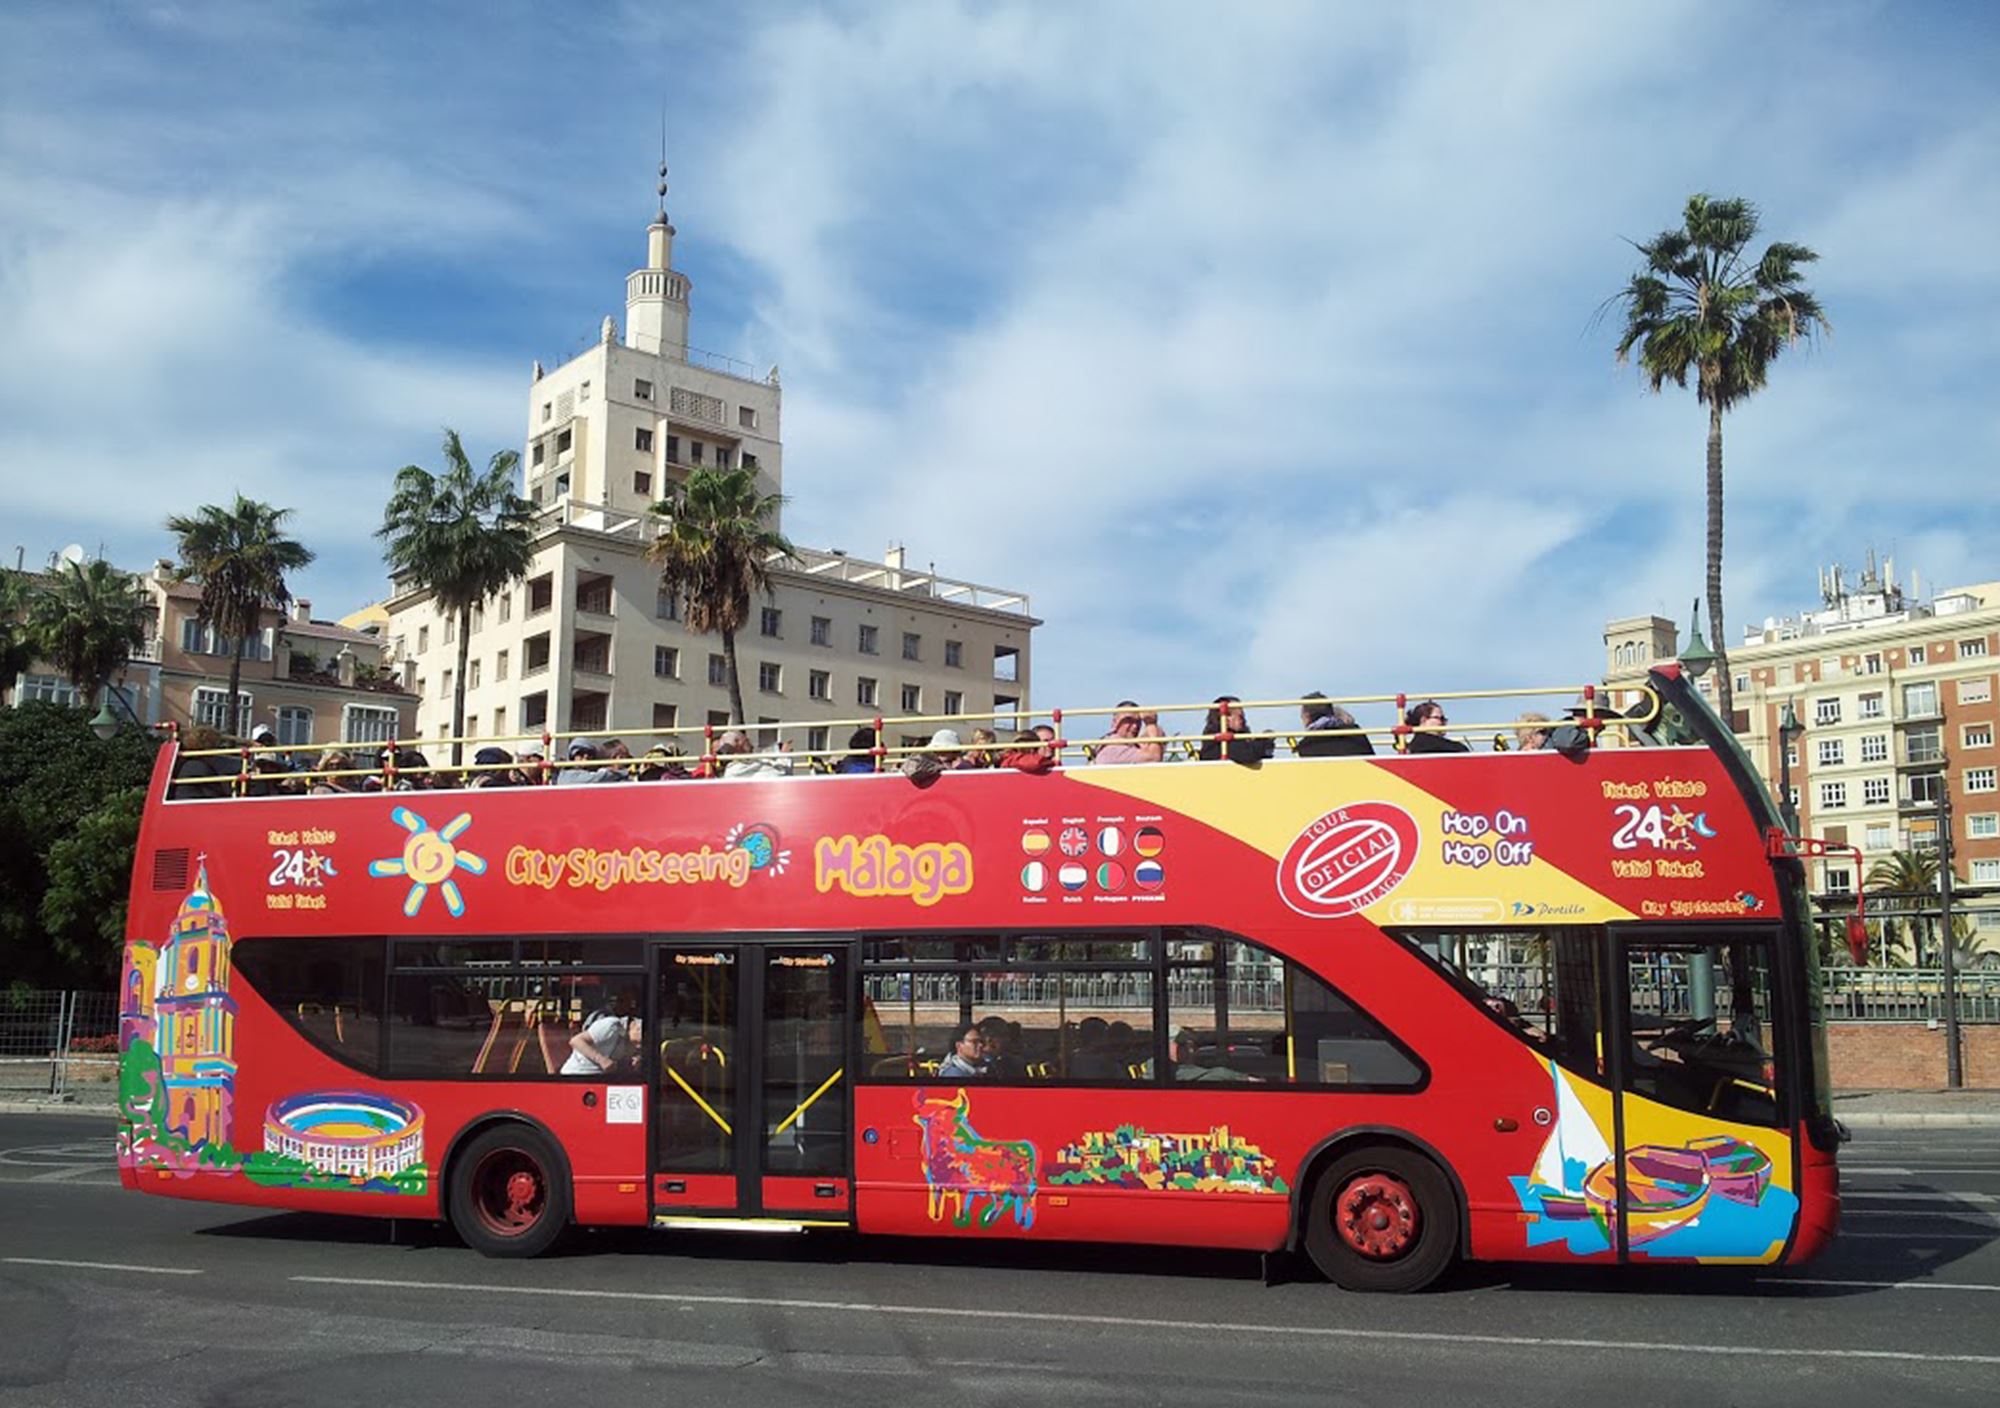 reservieren kaufen buchung tickets besucht Touren Fahrkarte karte karten Eintrittskarten Touristikbus City Sightseeing Malaga spain